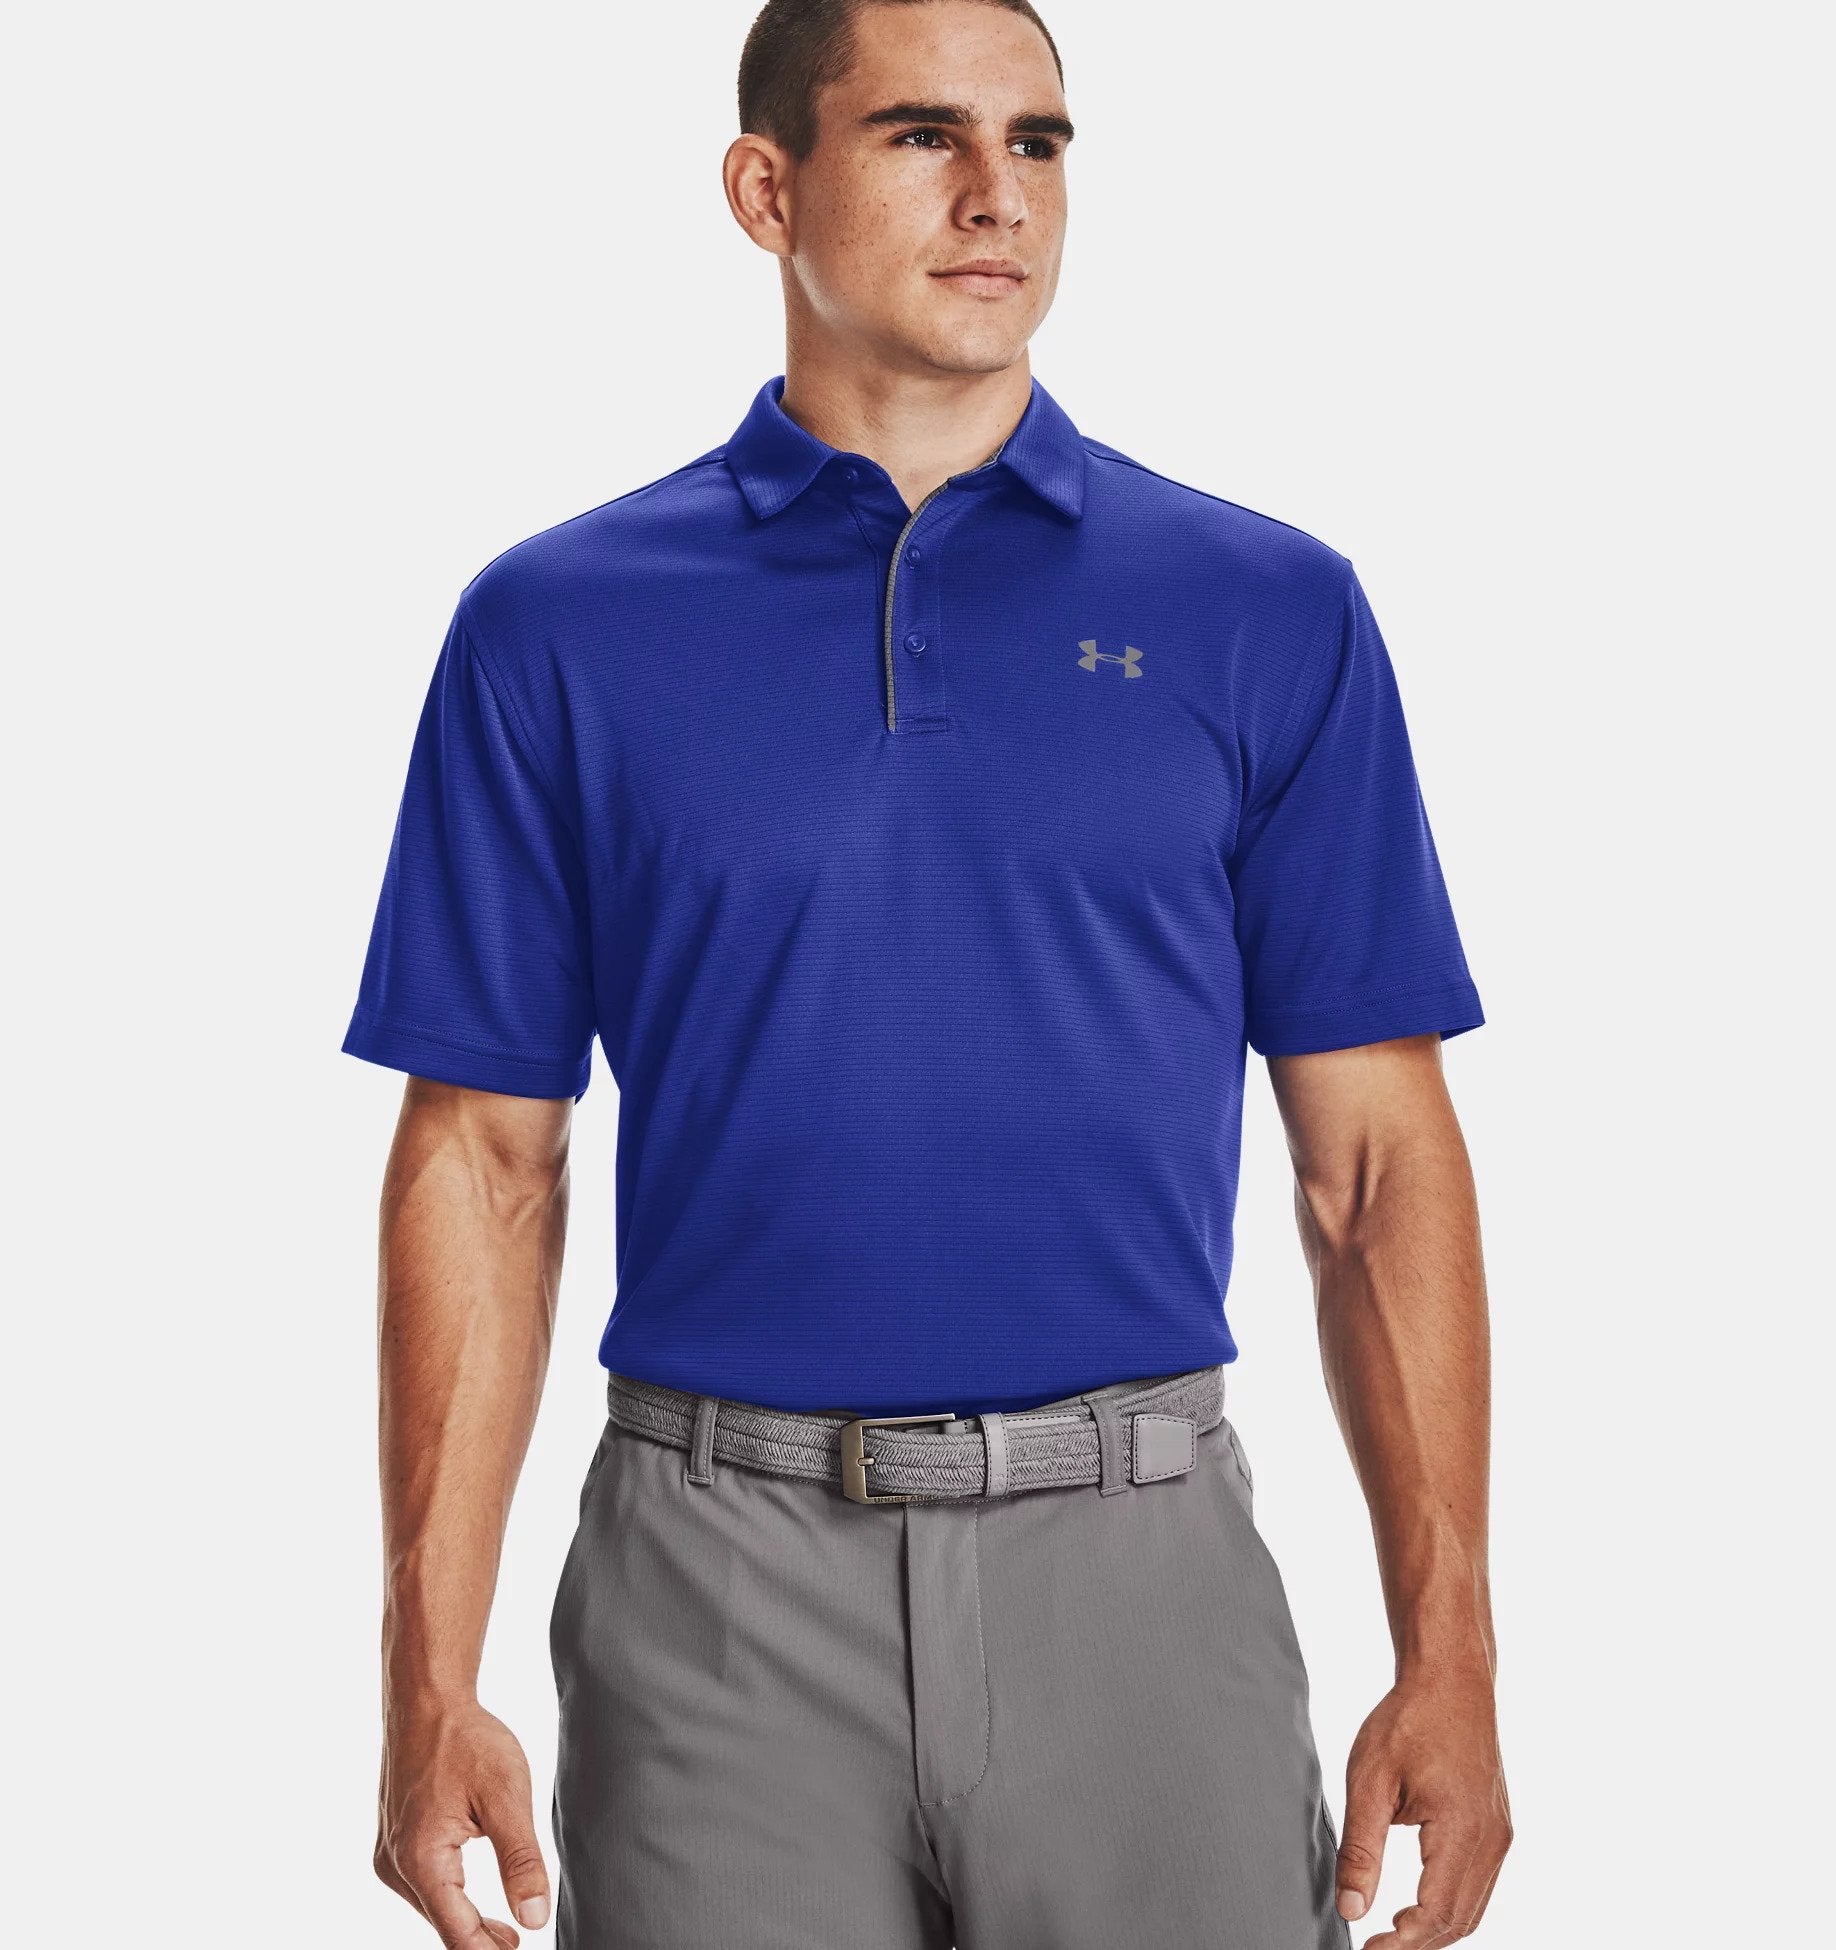 Under Armour Tech Men’s Golf Polo Shirt Royal